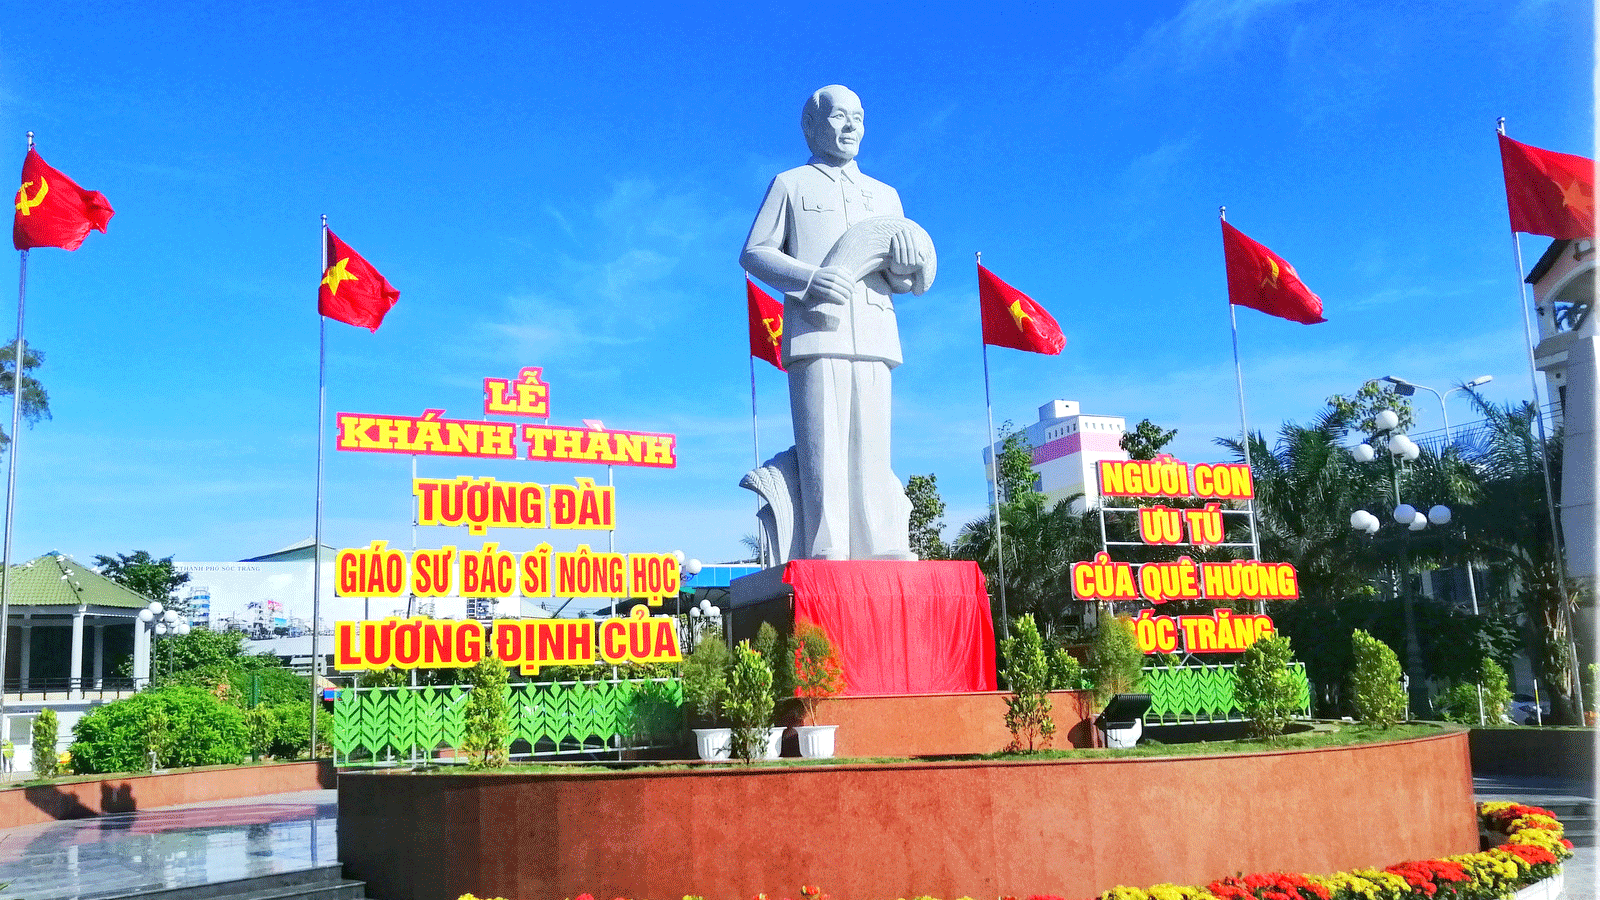 Khánh thành tượng đài Giáo sư - Bác sĩ nông học Lương Định Của